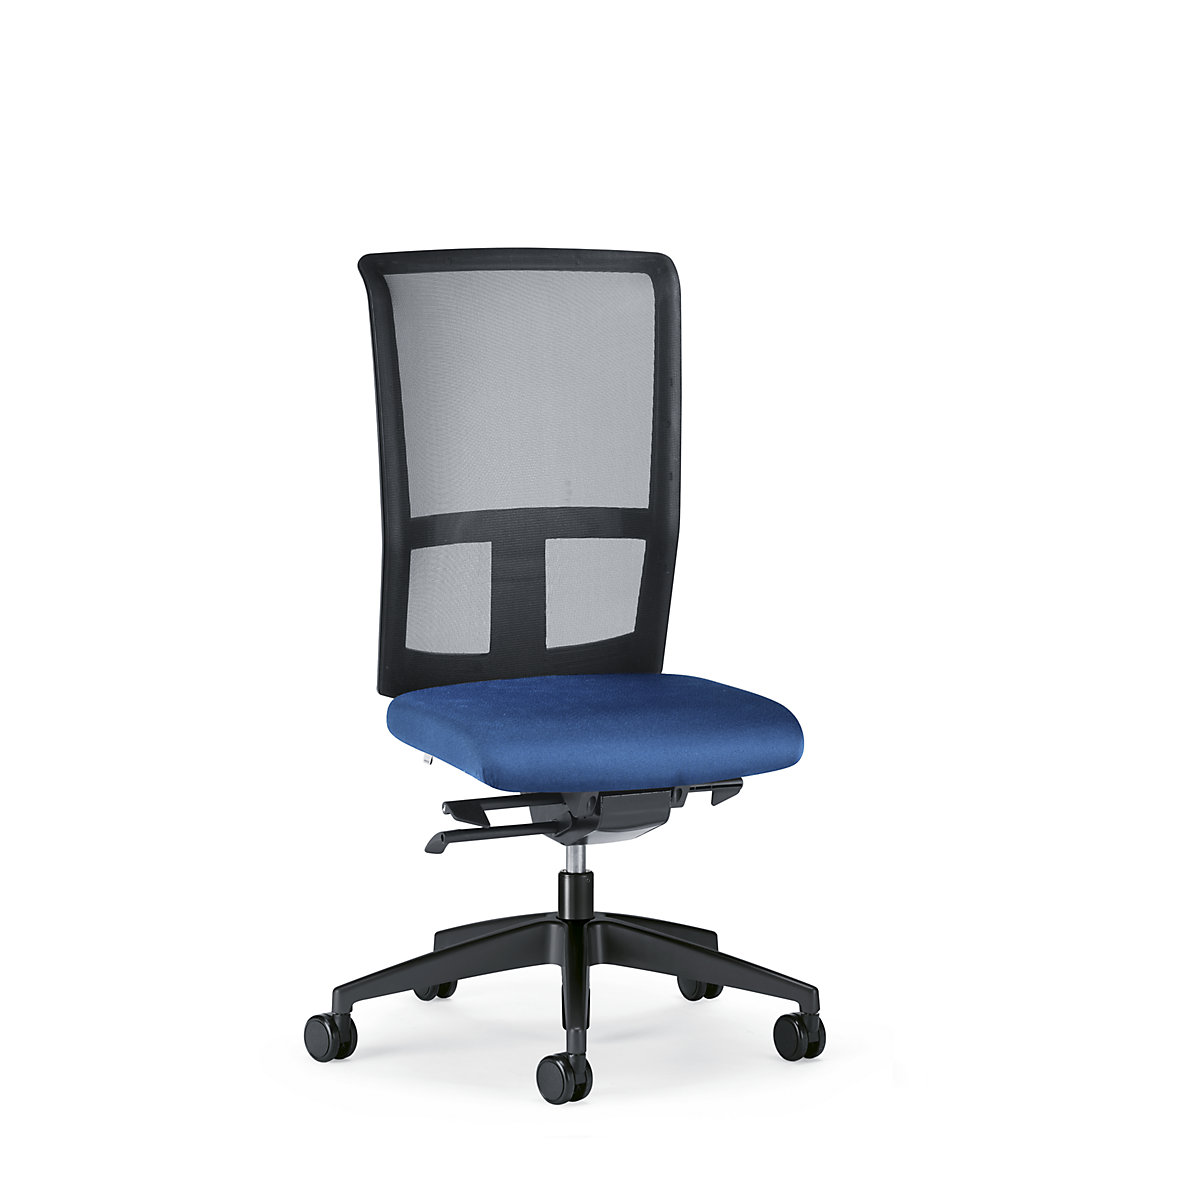 GOAL AIR office swivel chair, back rest height 545 mm – interstuhl